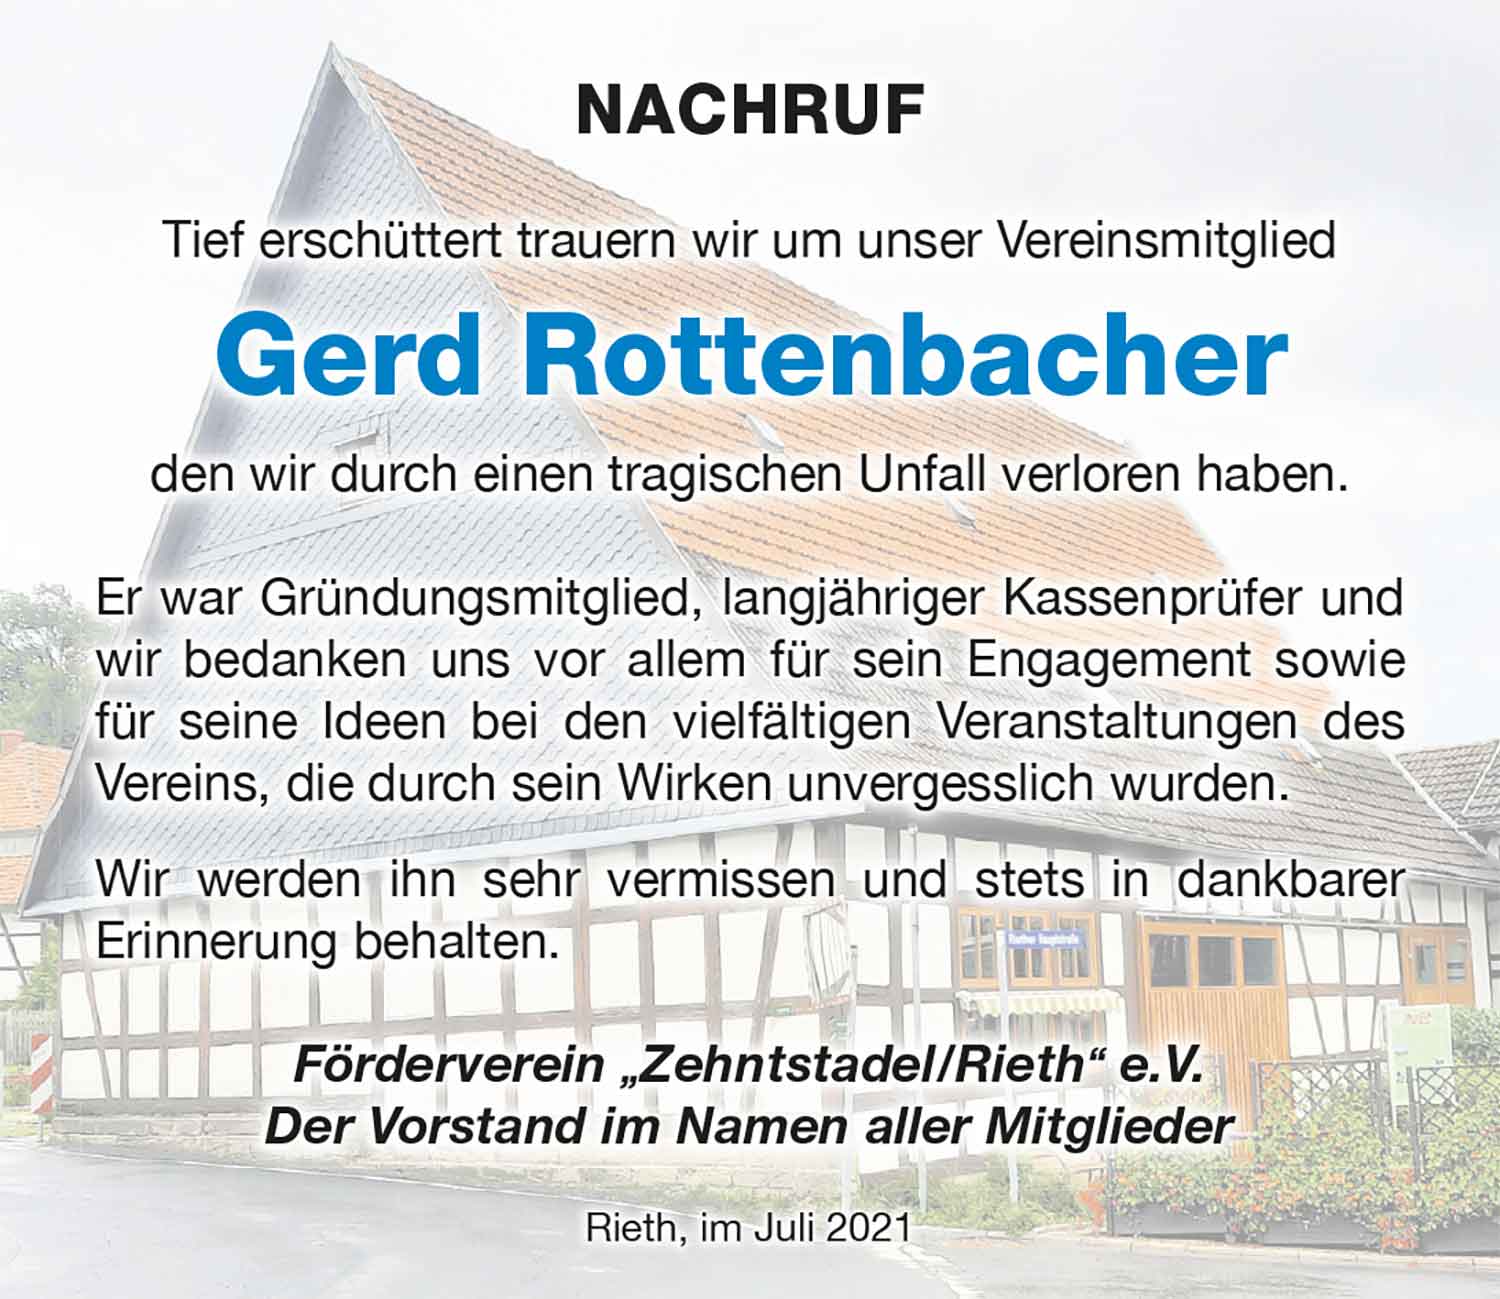 Nachruf_Gerd_Rottenbacher